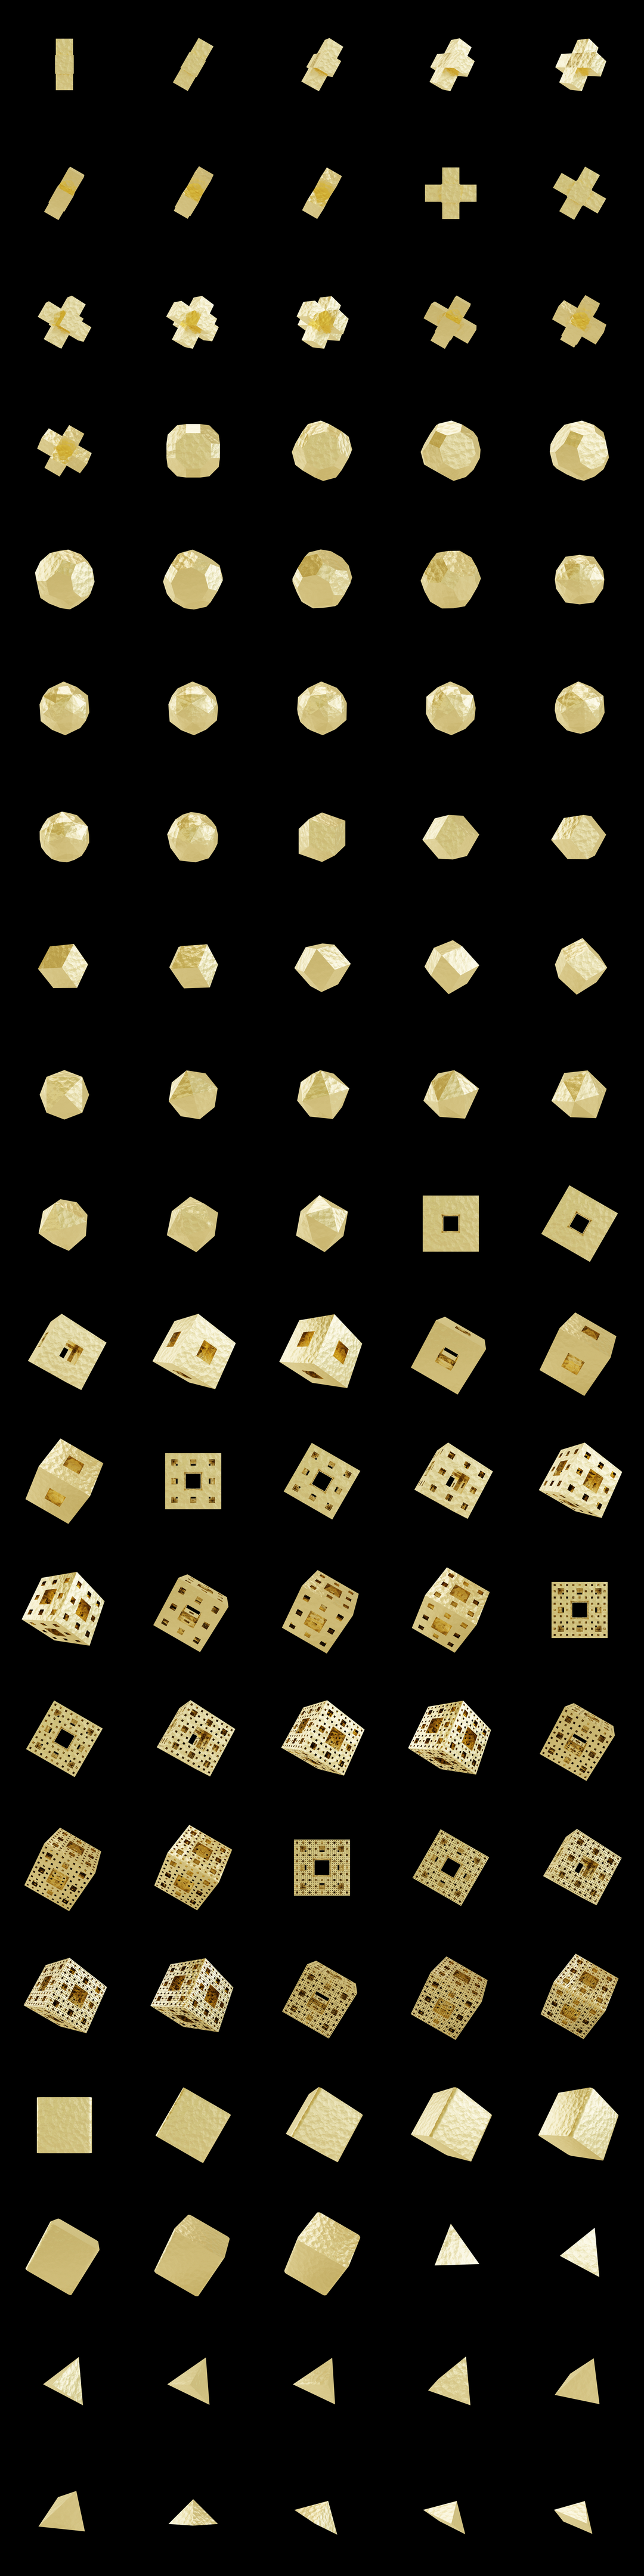 The Bundle - cmp.gold-foil/b tile image 2